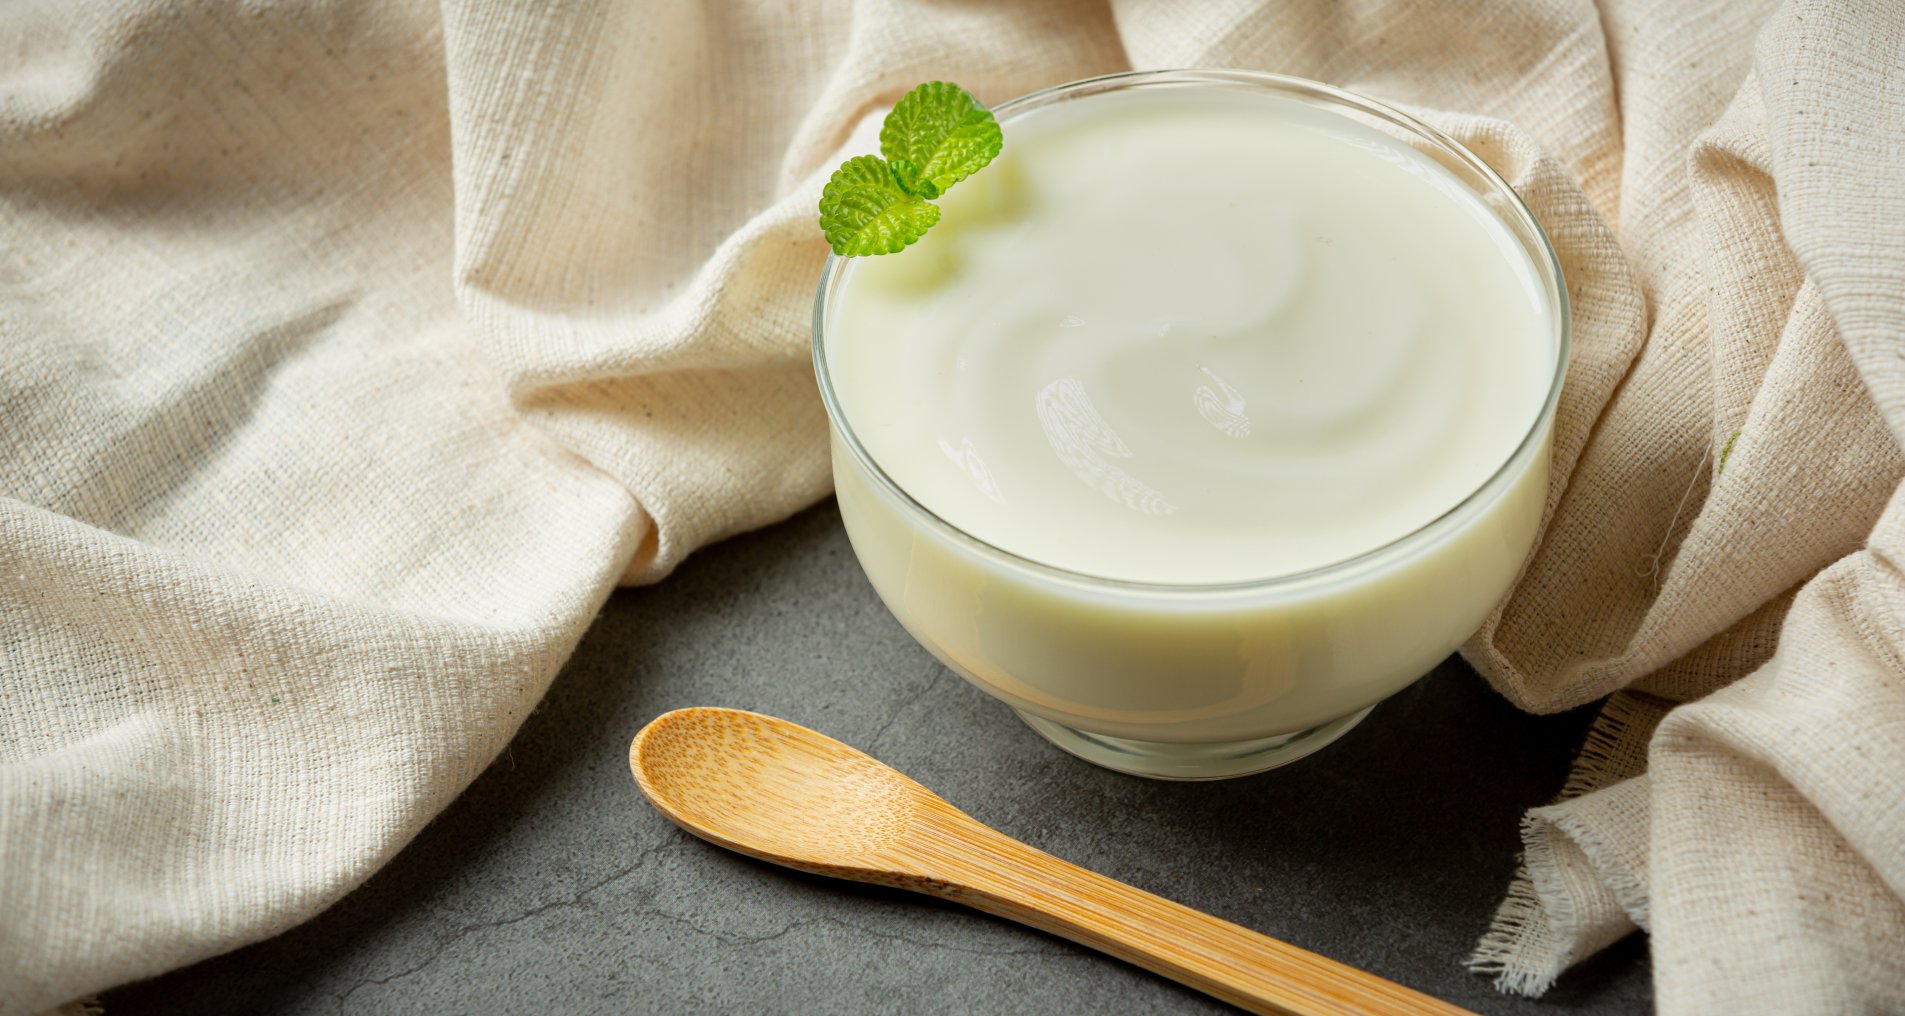 Йогурт продукти при тривожності